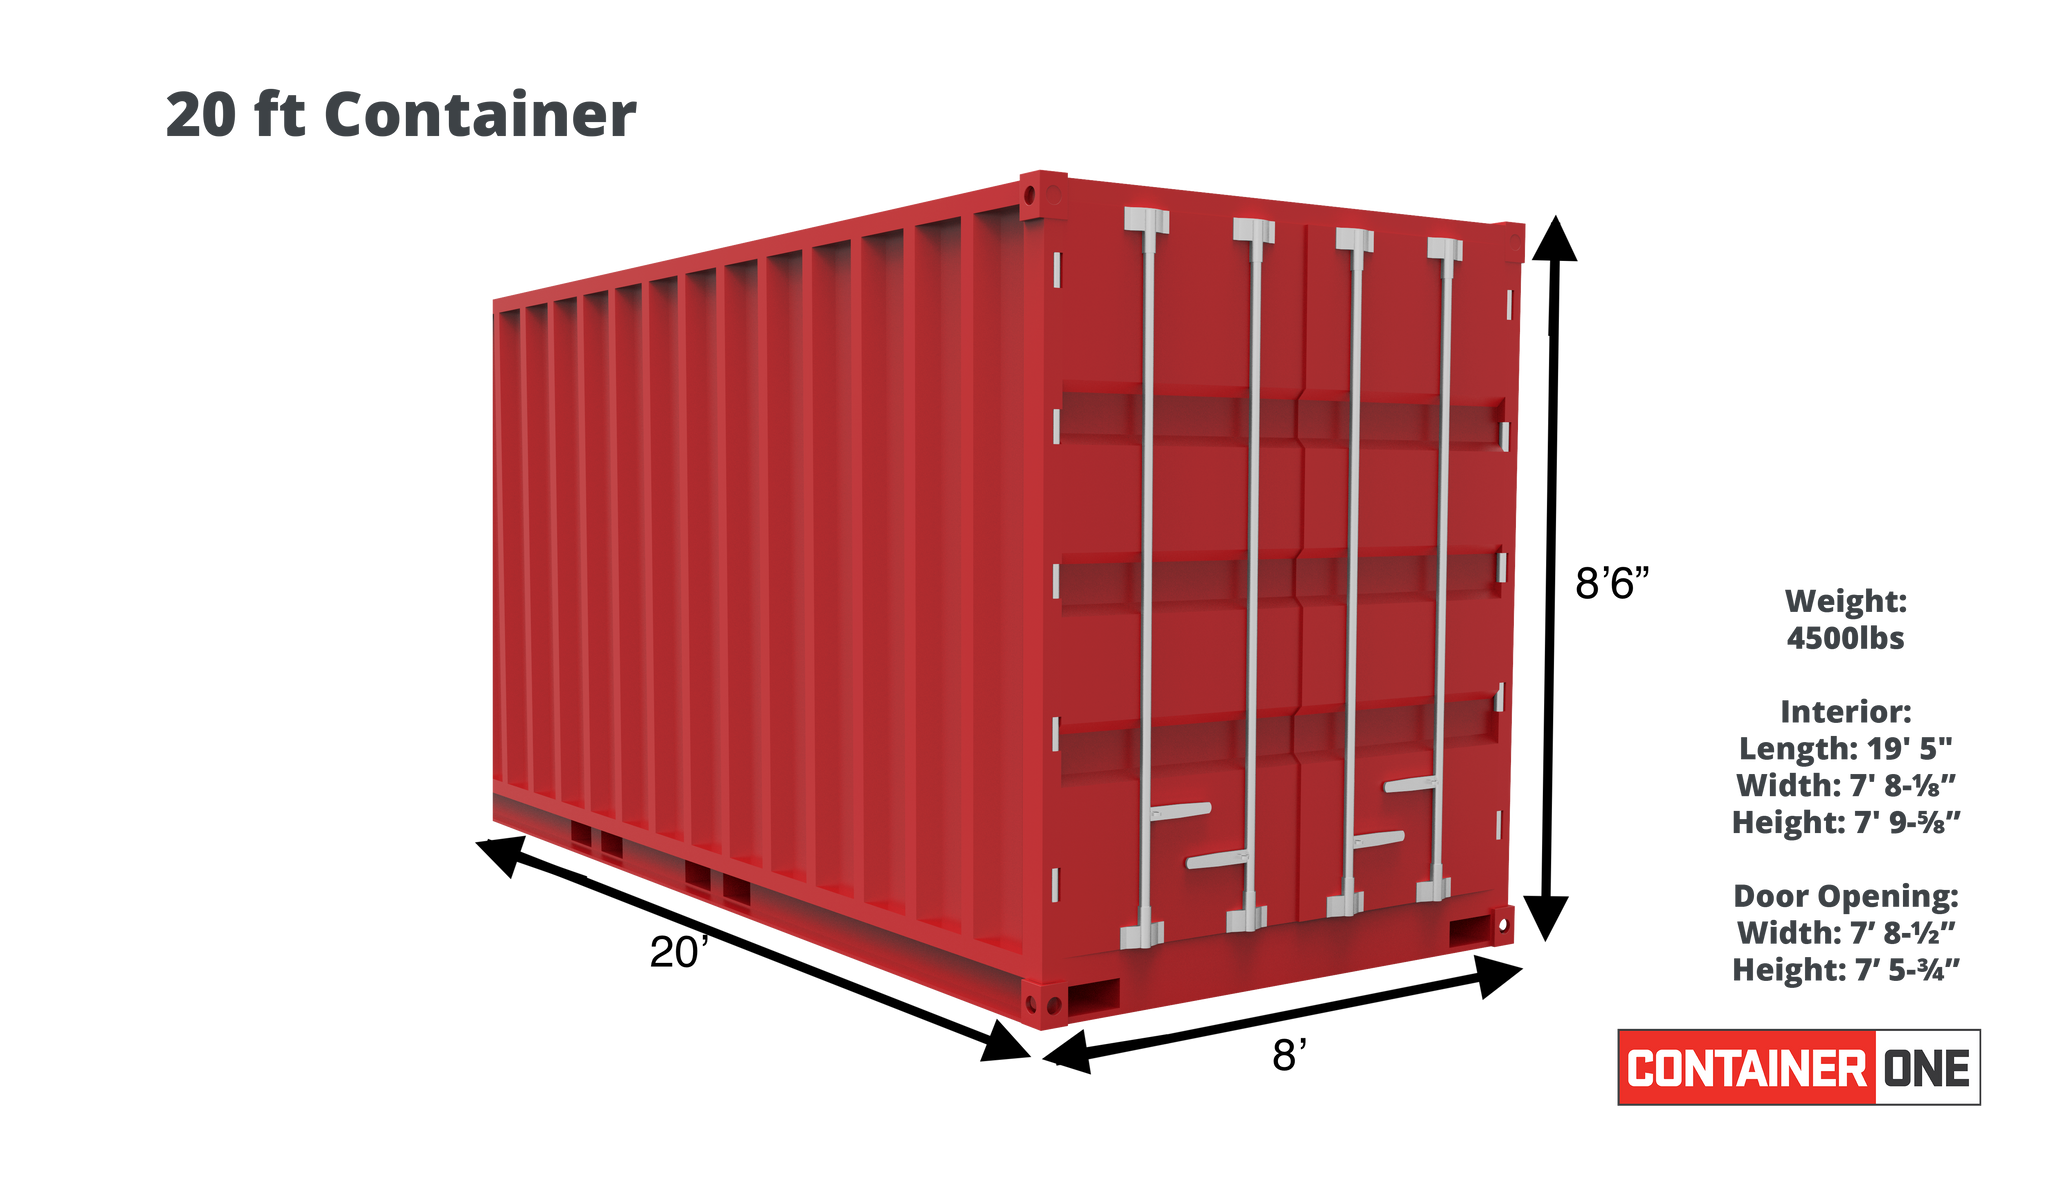 Высота контейнера 20 футов. 20 Ft контейнер. 20 Ft Container Dimensions. Длина 20 фут контейнера. Контейнер 20 футов размеры вес